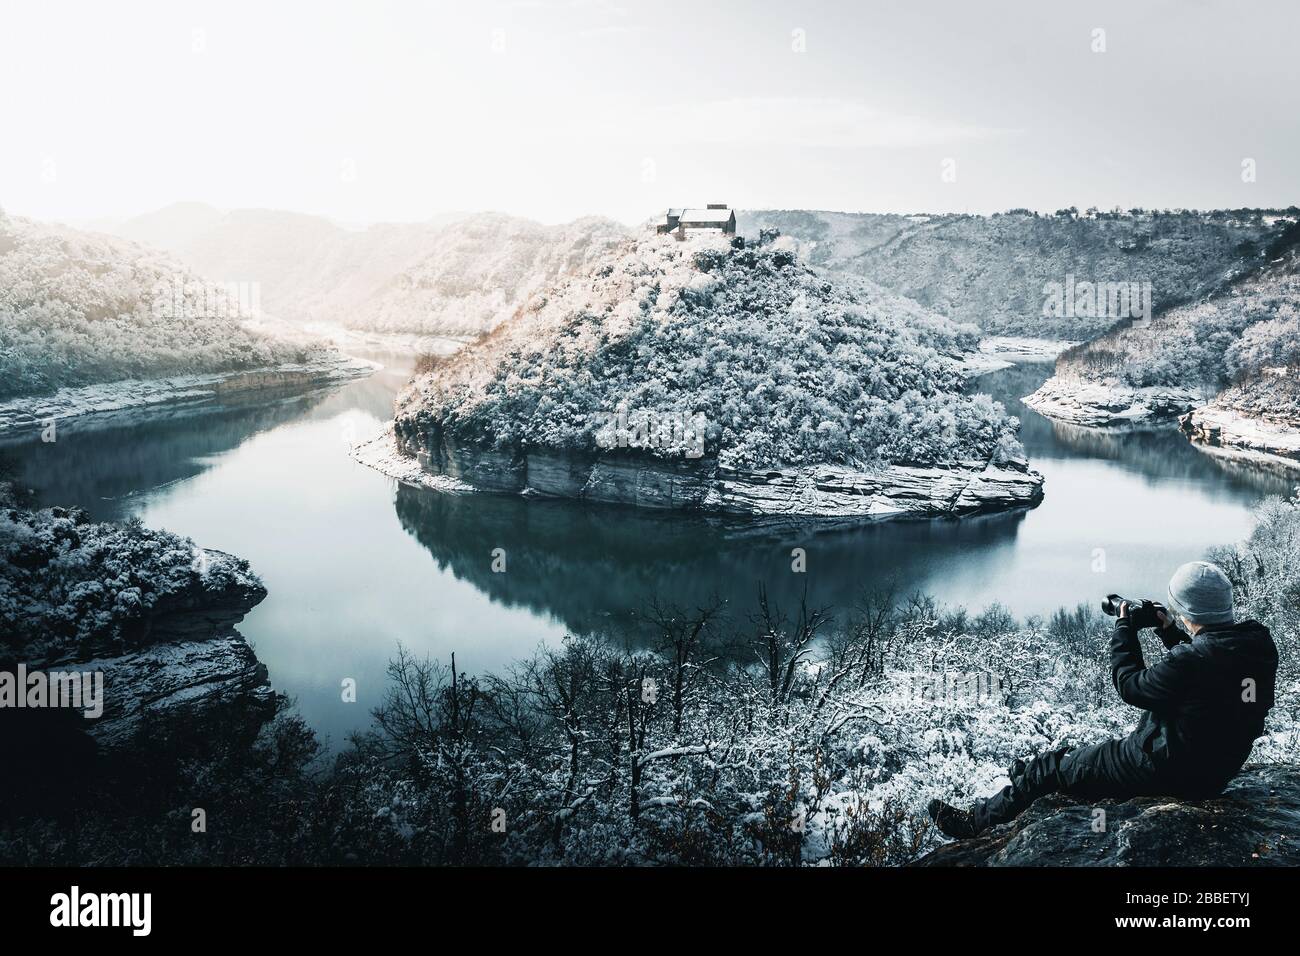 Photographe prenant des photos dans un paysage enneigé d'un méchant de rivière Banque D'Images